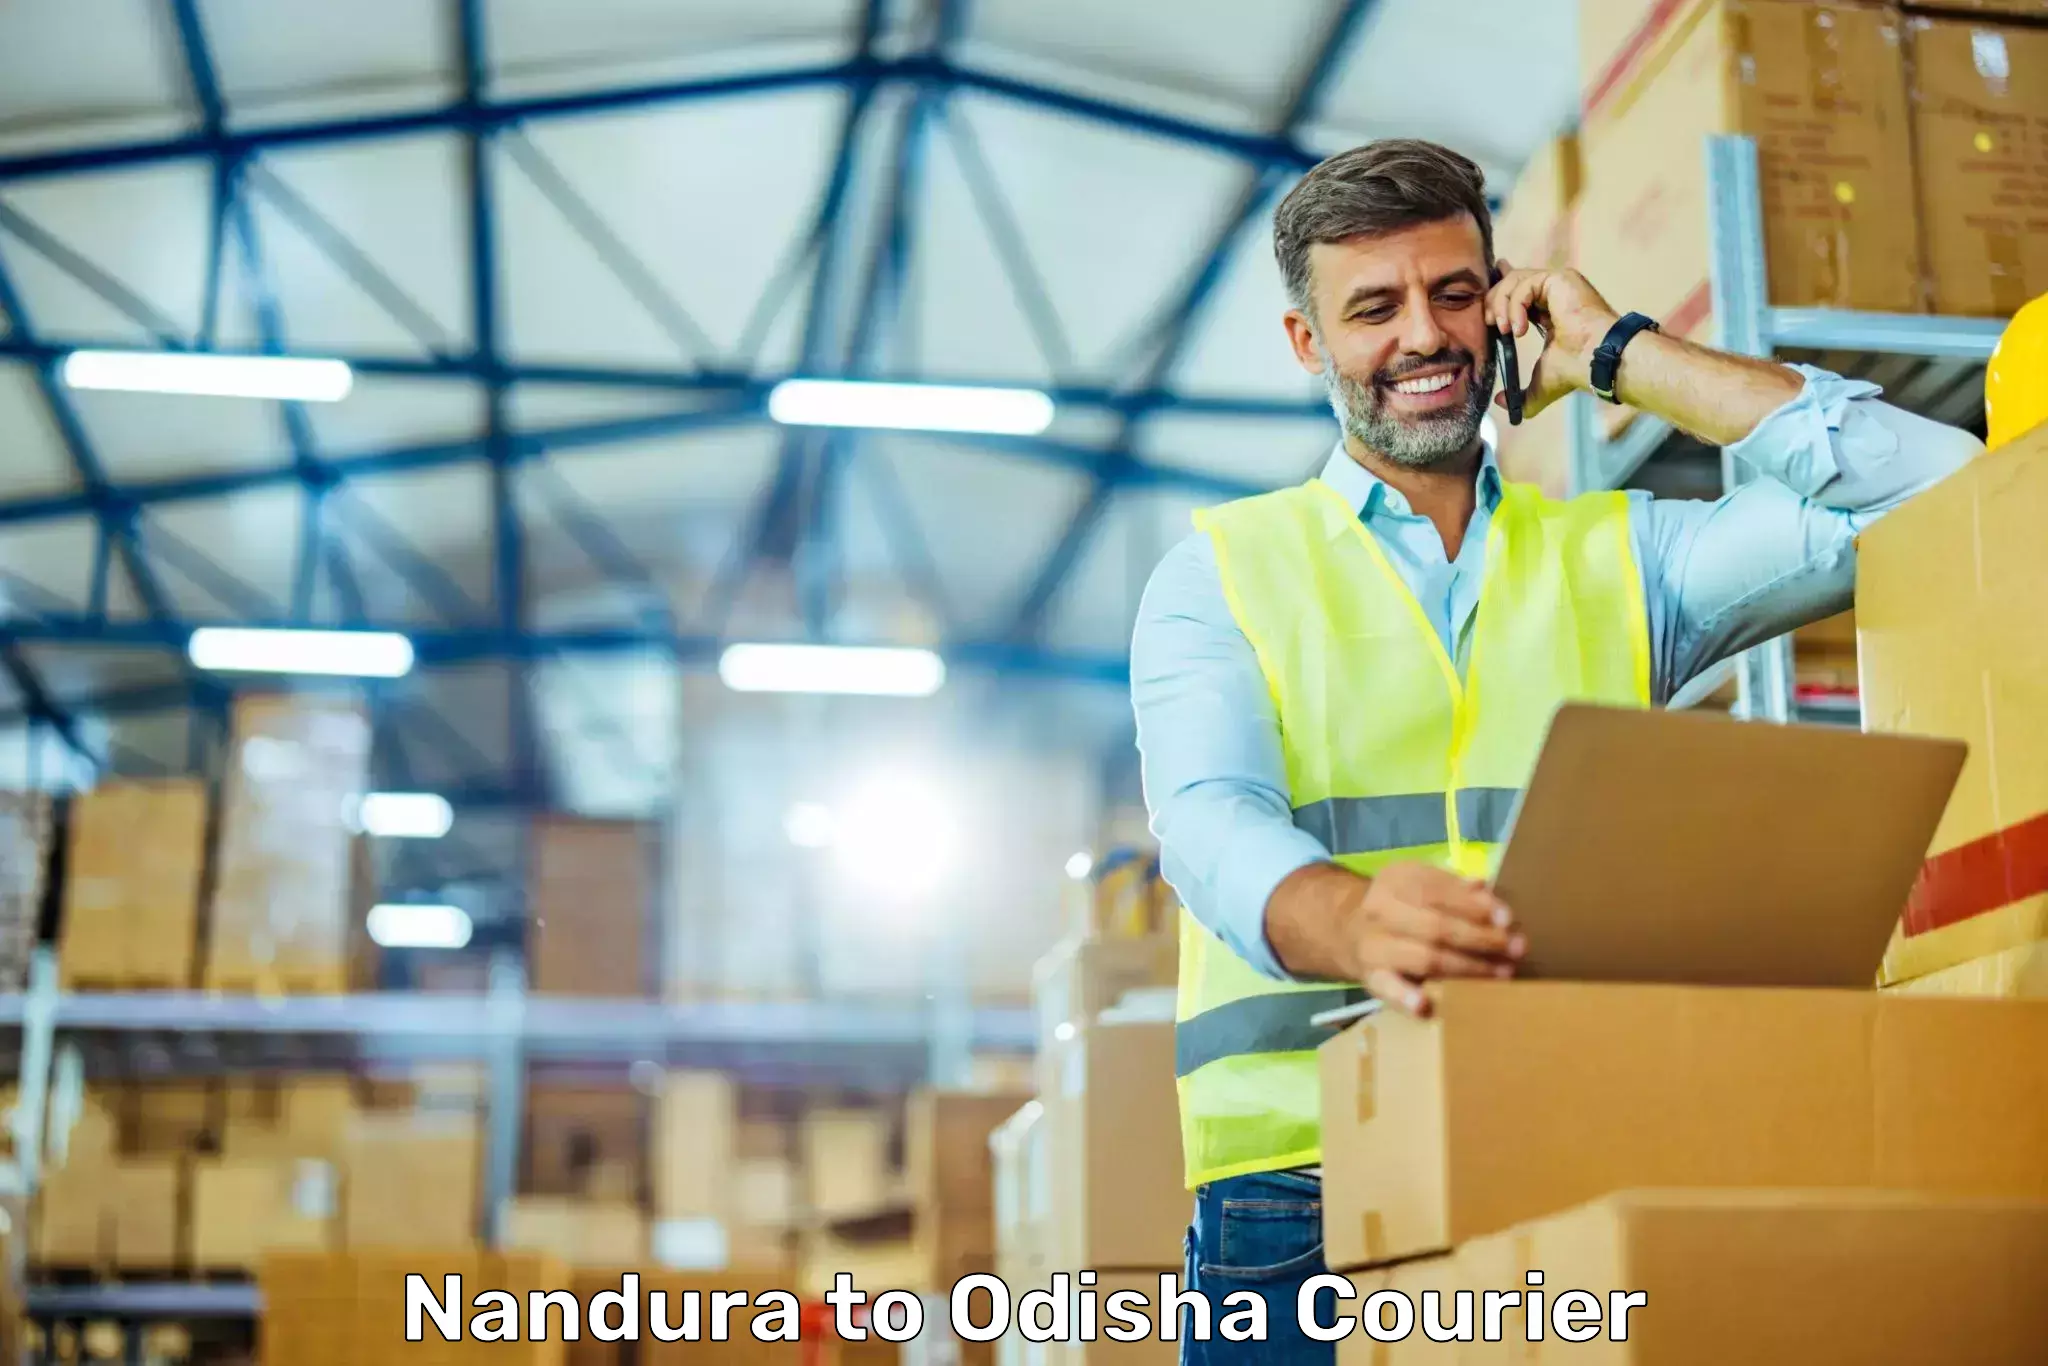 Courier service comparison Nandura to Sohela